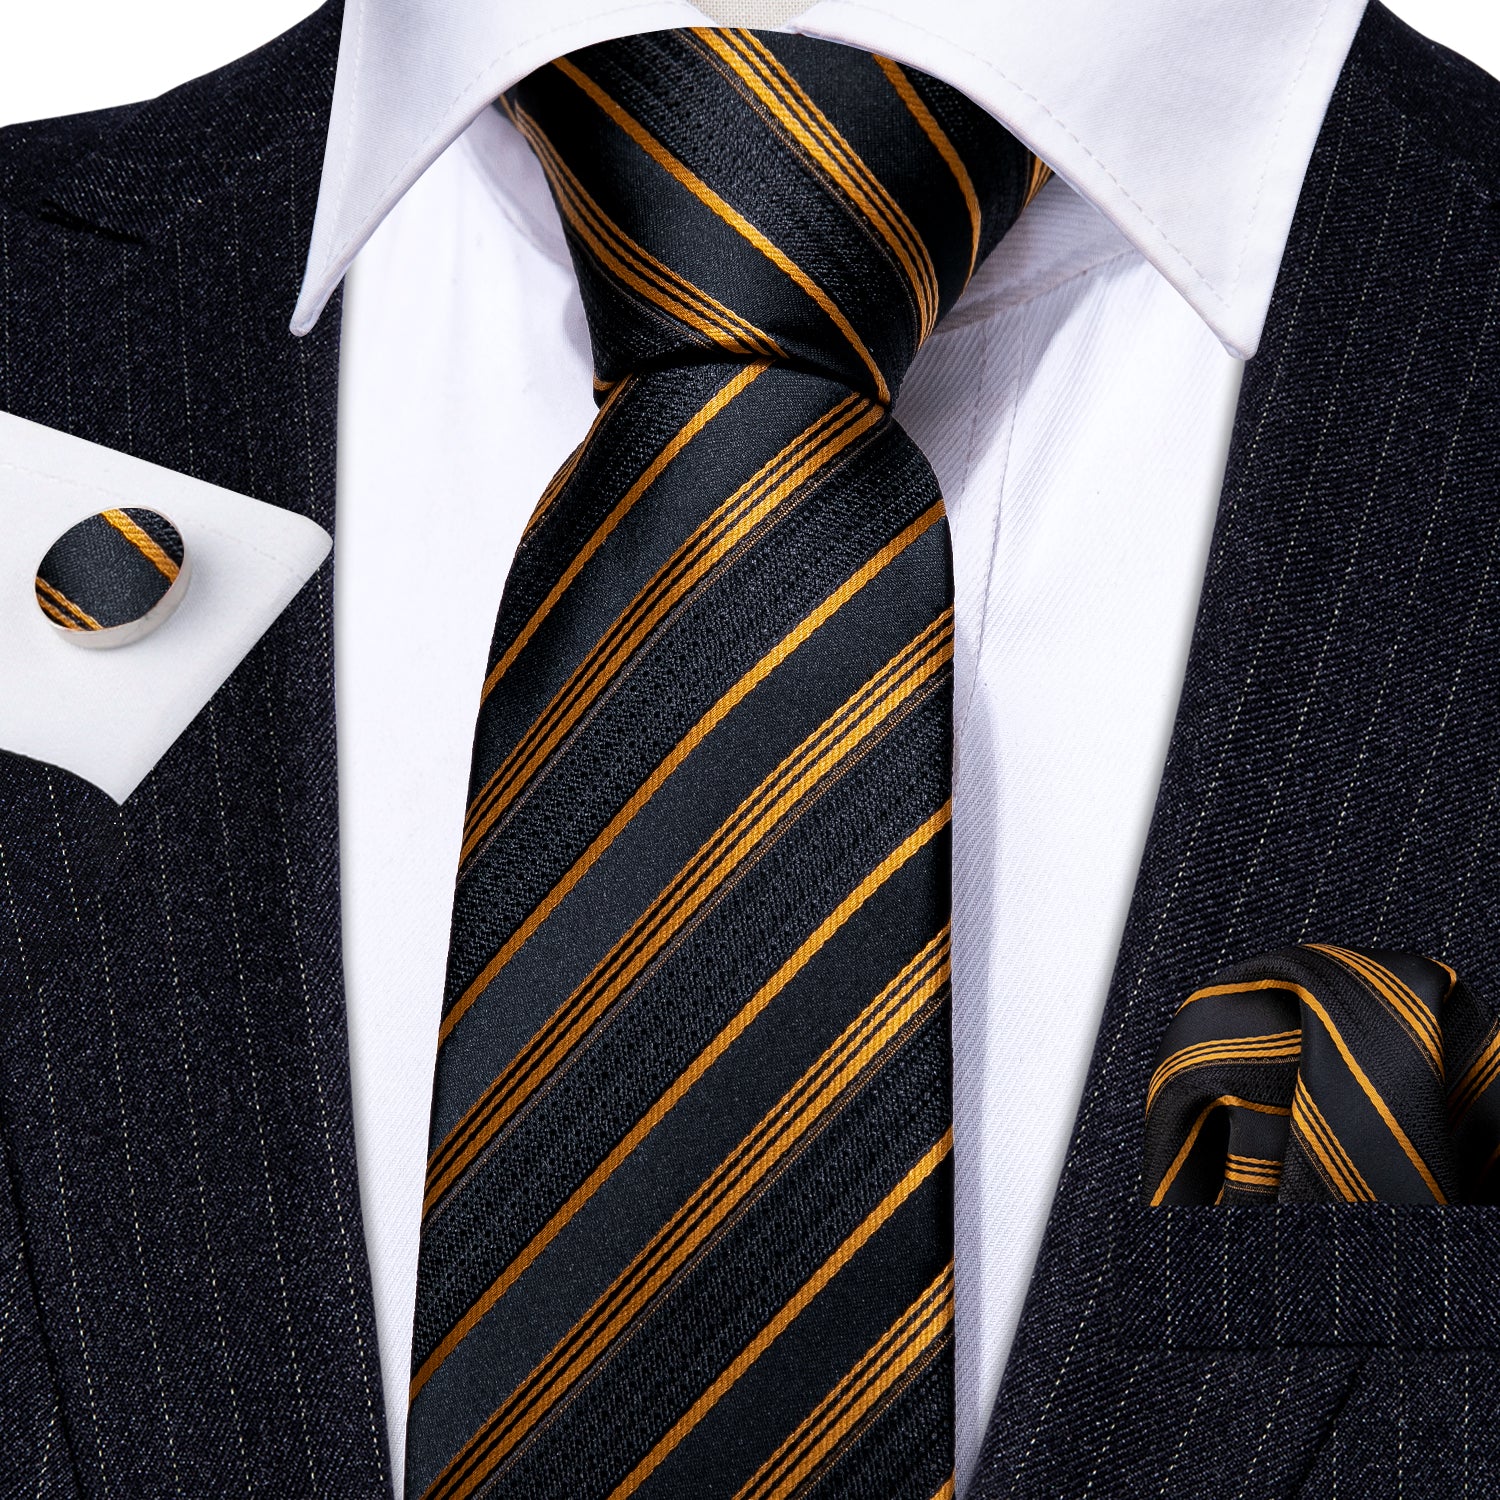 Gold Black Striped Silk Tie Handkerchief Cufflinks Set